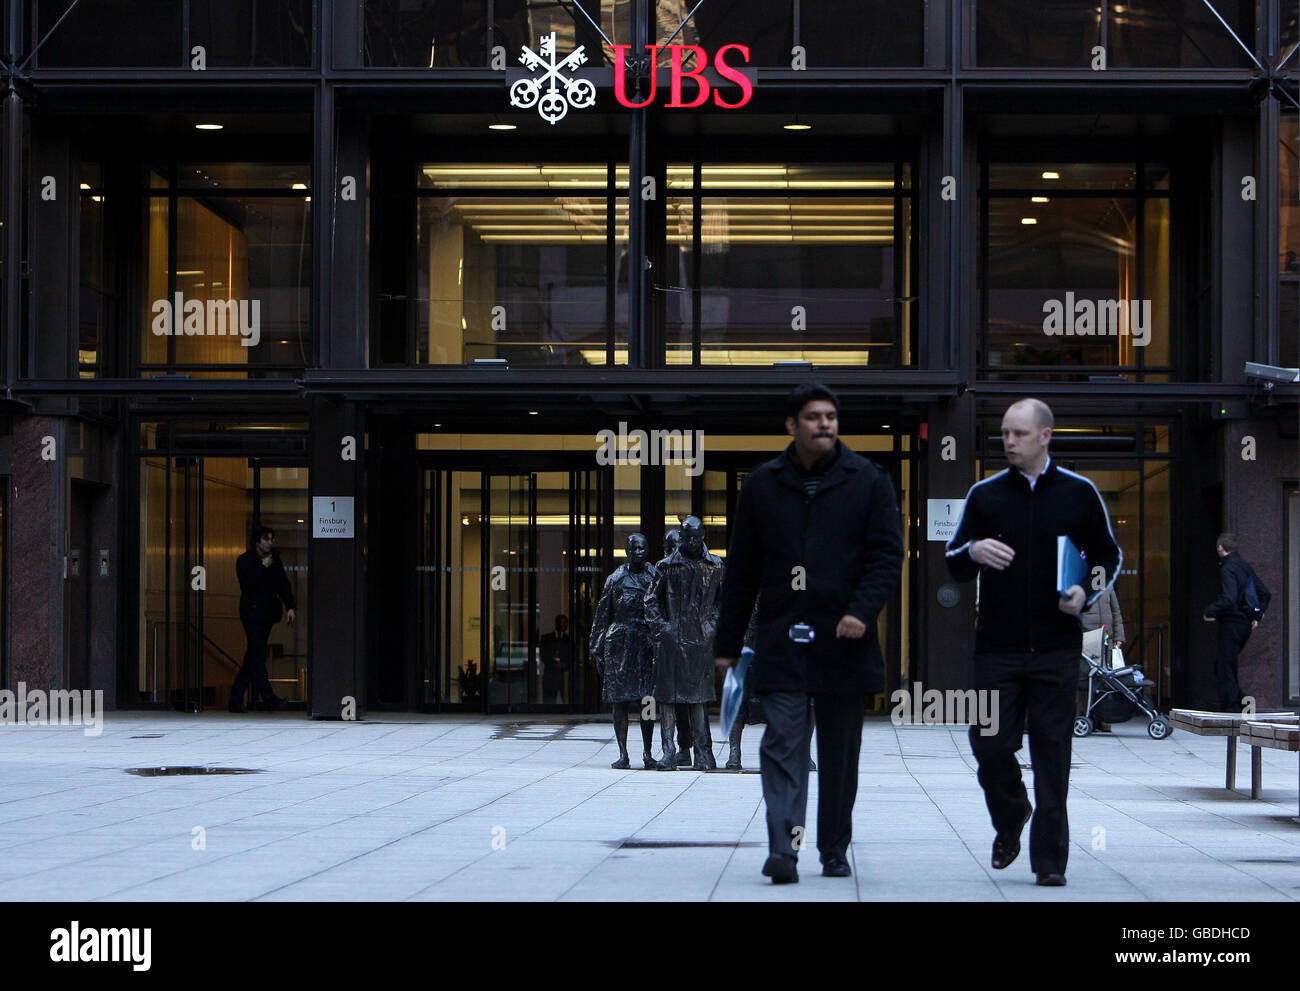 Una visione generale degli uffici della banca d'investimento UBS a Londra, dopo che la banca in difficoltà ha annunciato piani per tagliare almeno 2,000 posti di lavoro in più, mentre ha rivelato perdite enormi per gli ultimi tre mesi del 2008. Foto Stock